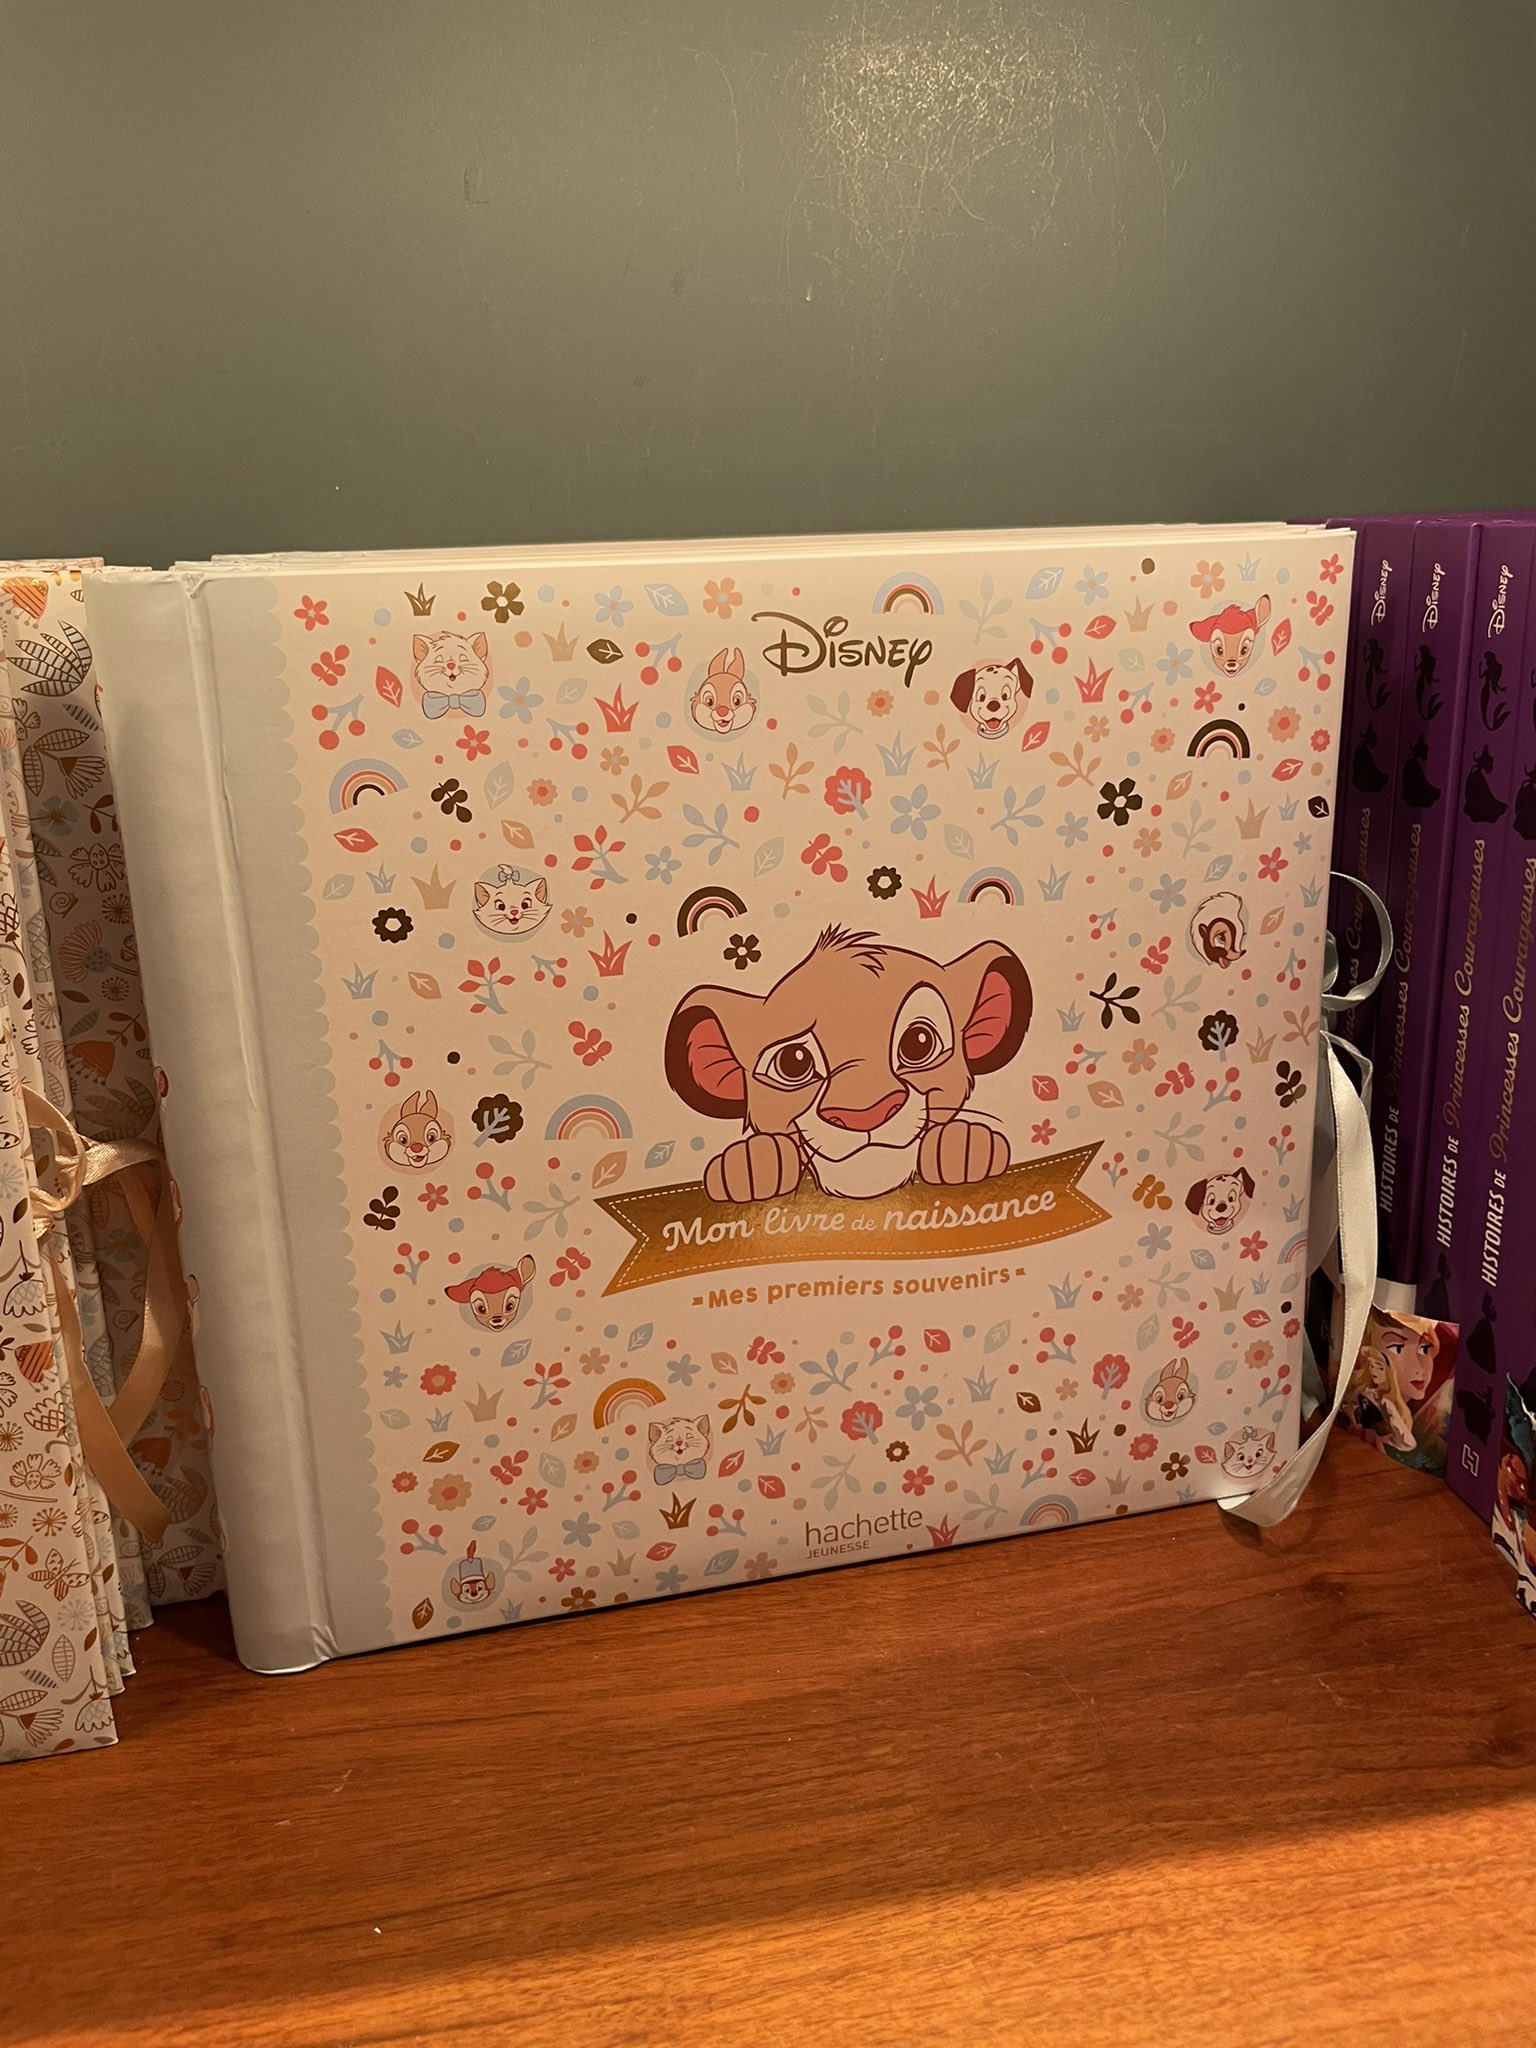 DISNEY - Mon livre de naissance, mes premiers souvenirs (Dumbo